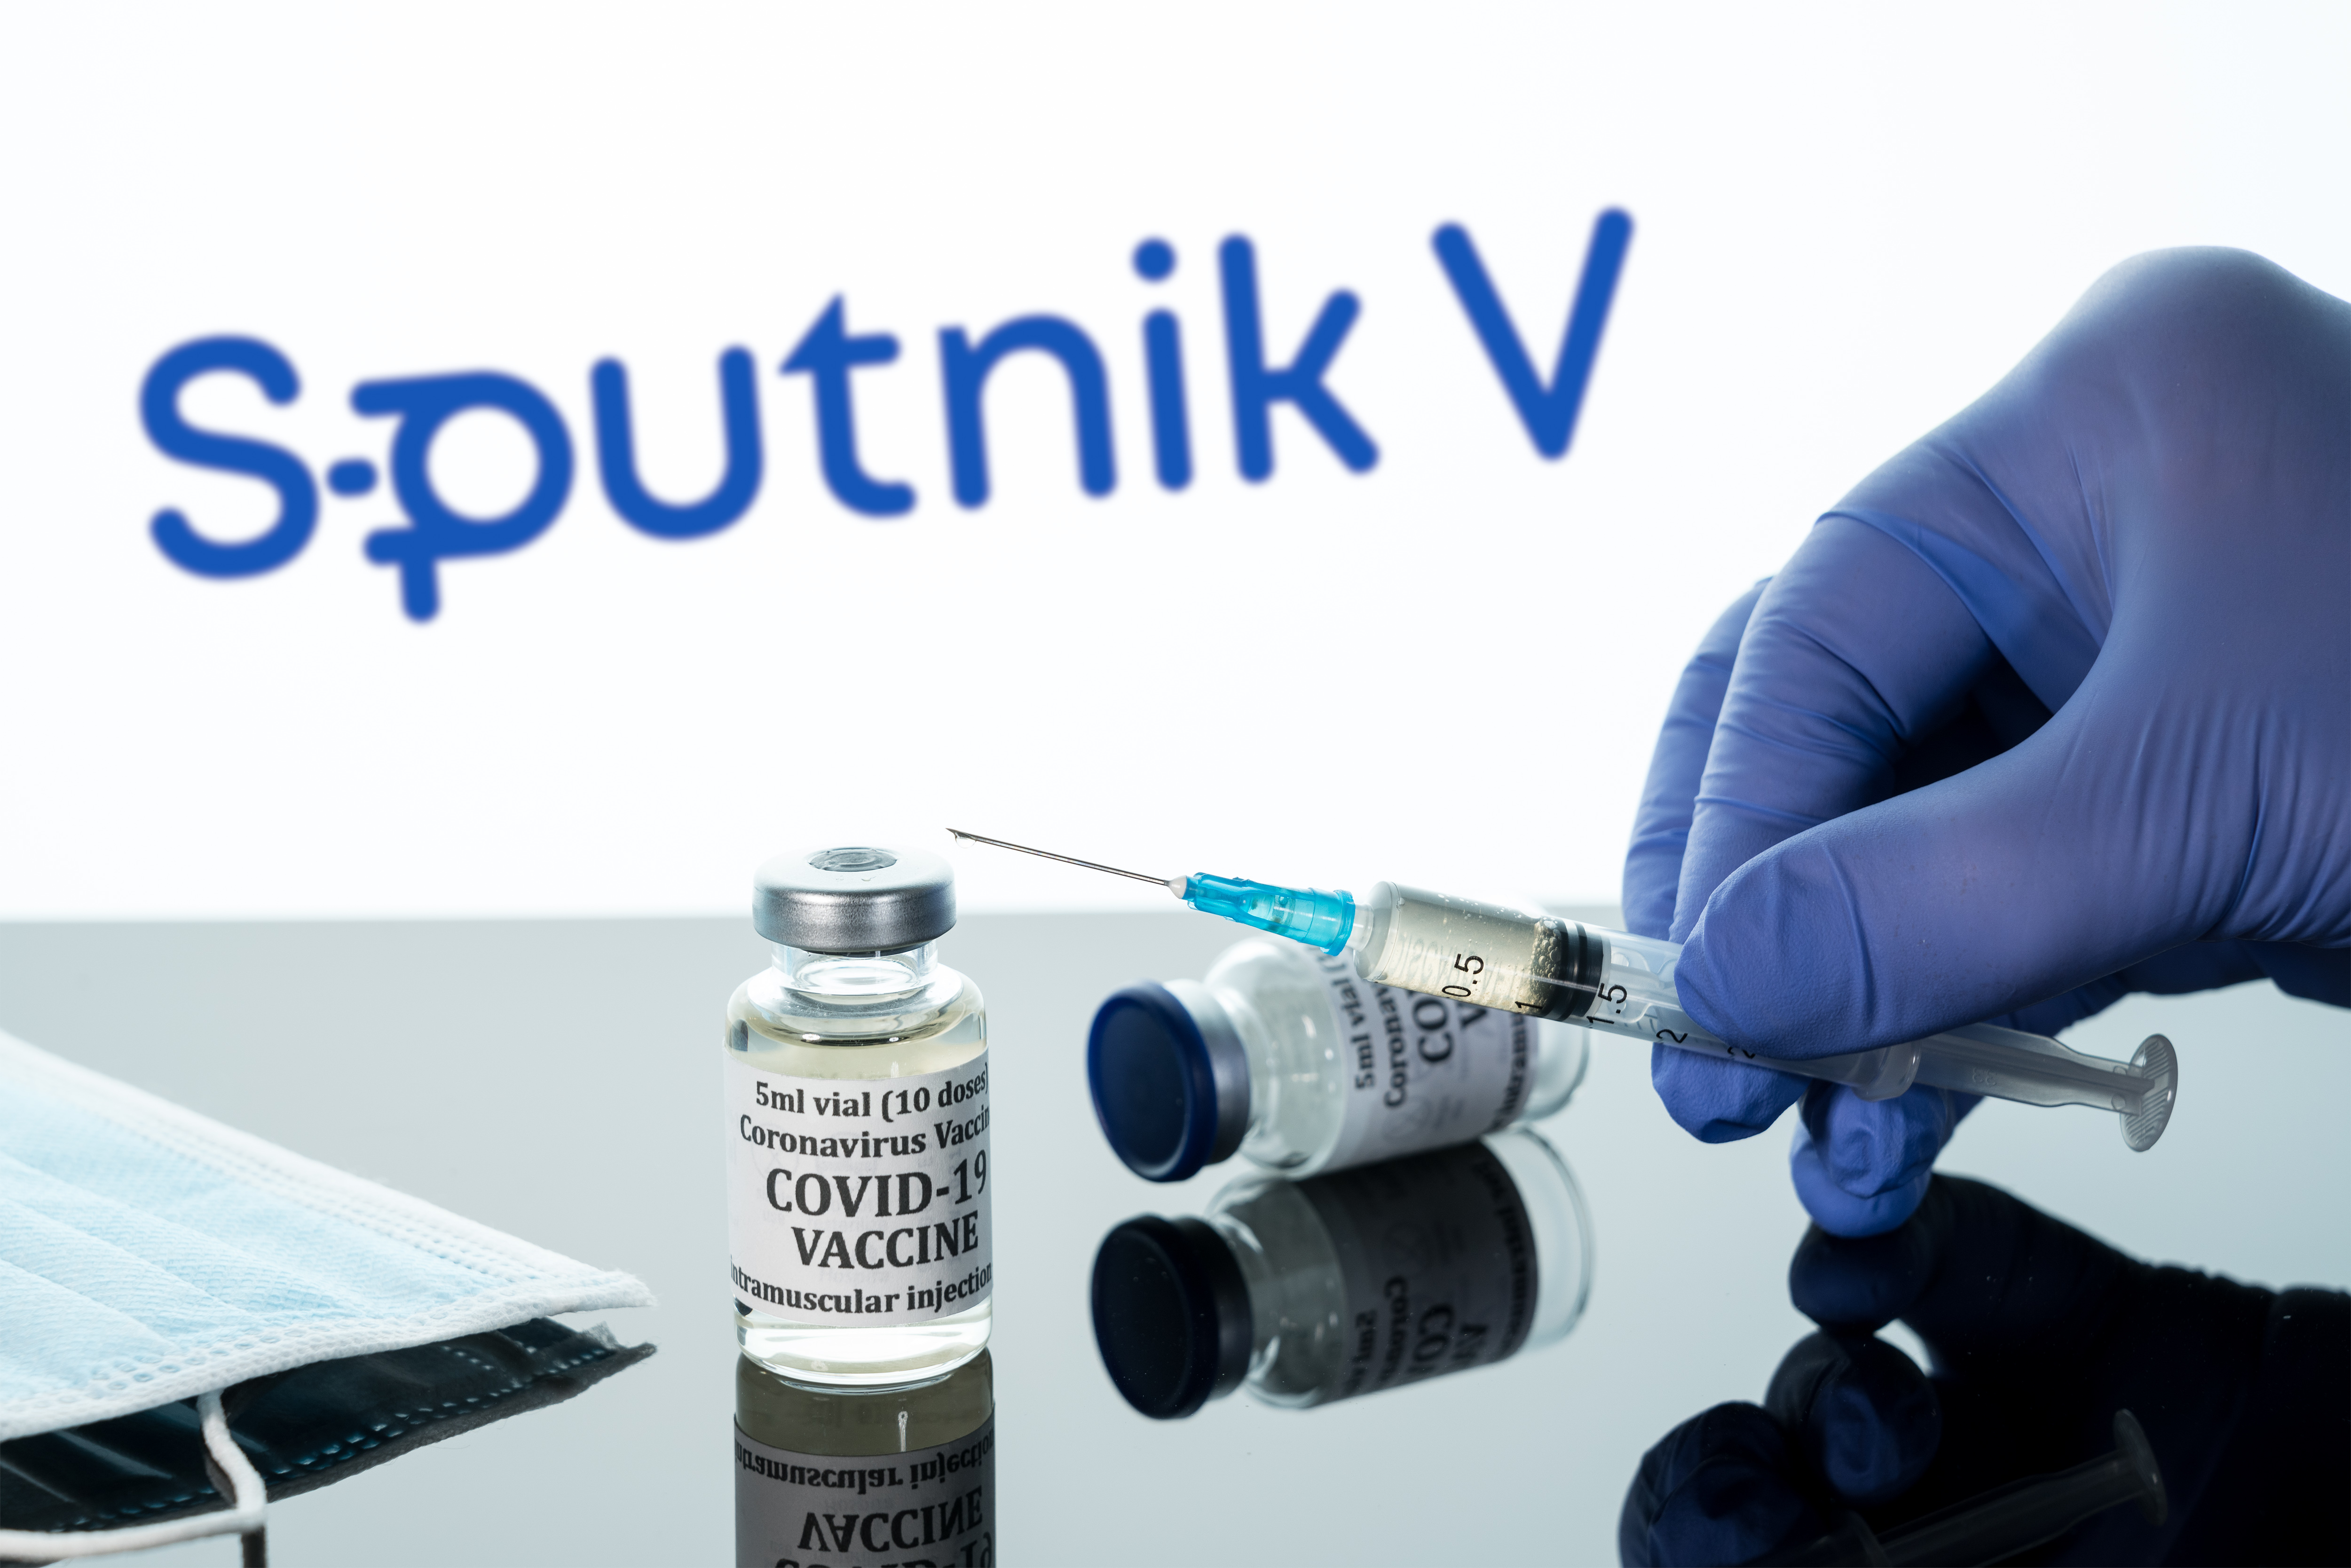 Țara care se opune recunoașterii vaccinului Sputnik V pe certificatul de vaccinare european